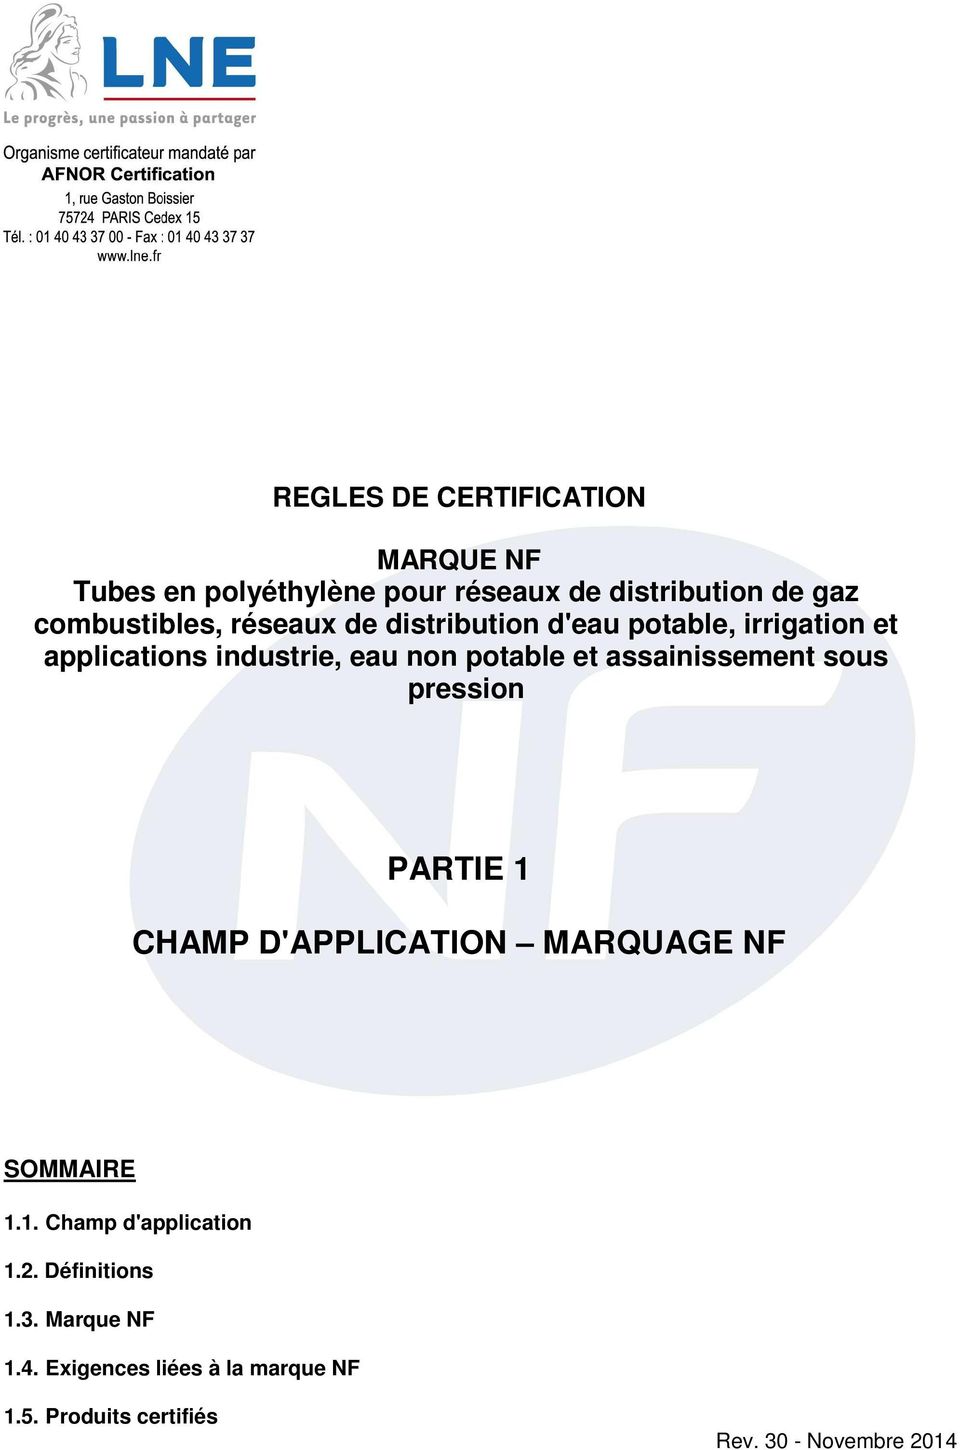 assainissement sous pression PARTIE 1 CHAMP D'APPLICATION MARQUAGE NF SOMMAIRE 1.1. Champ d'application 1.